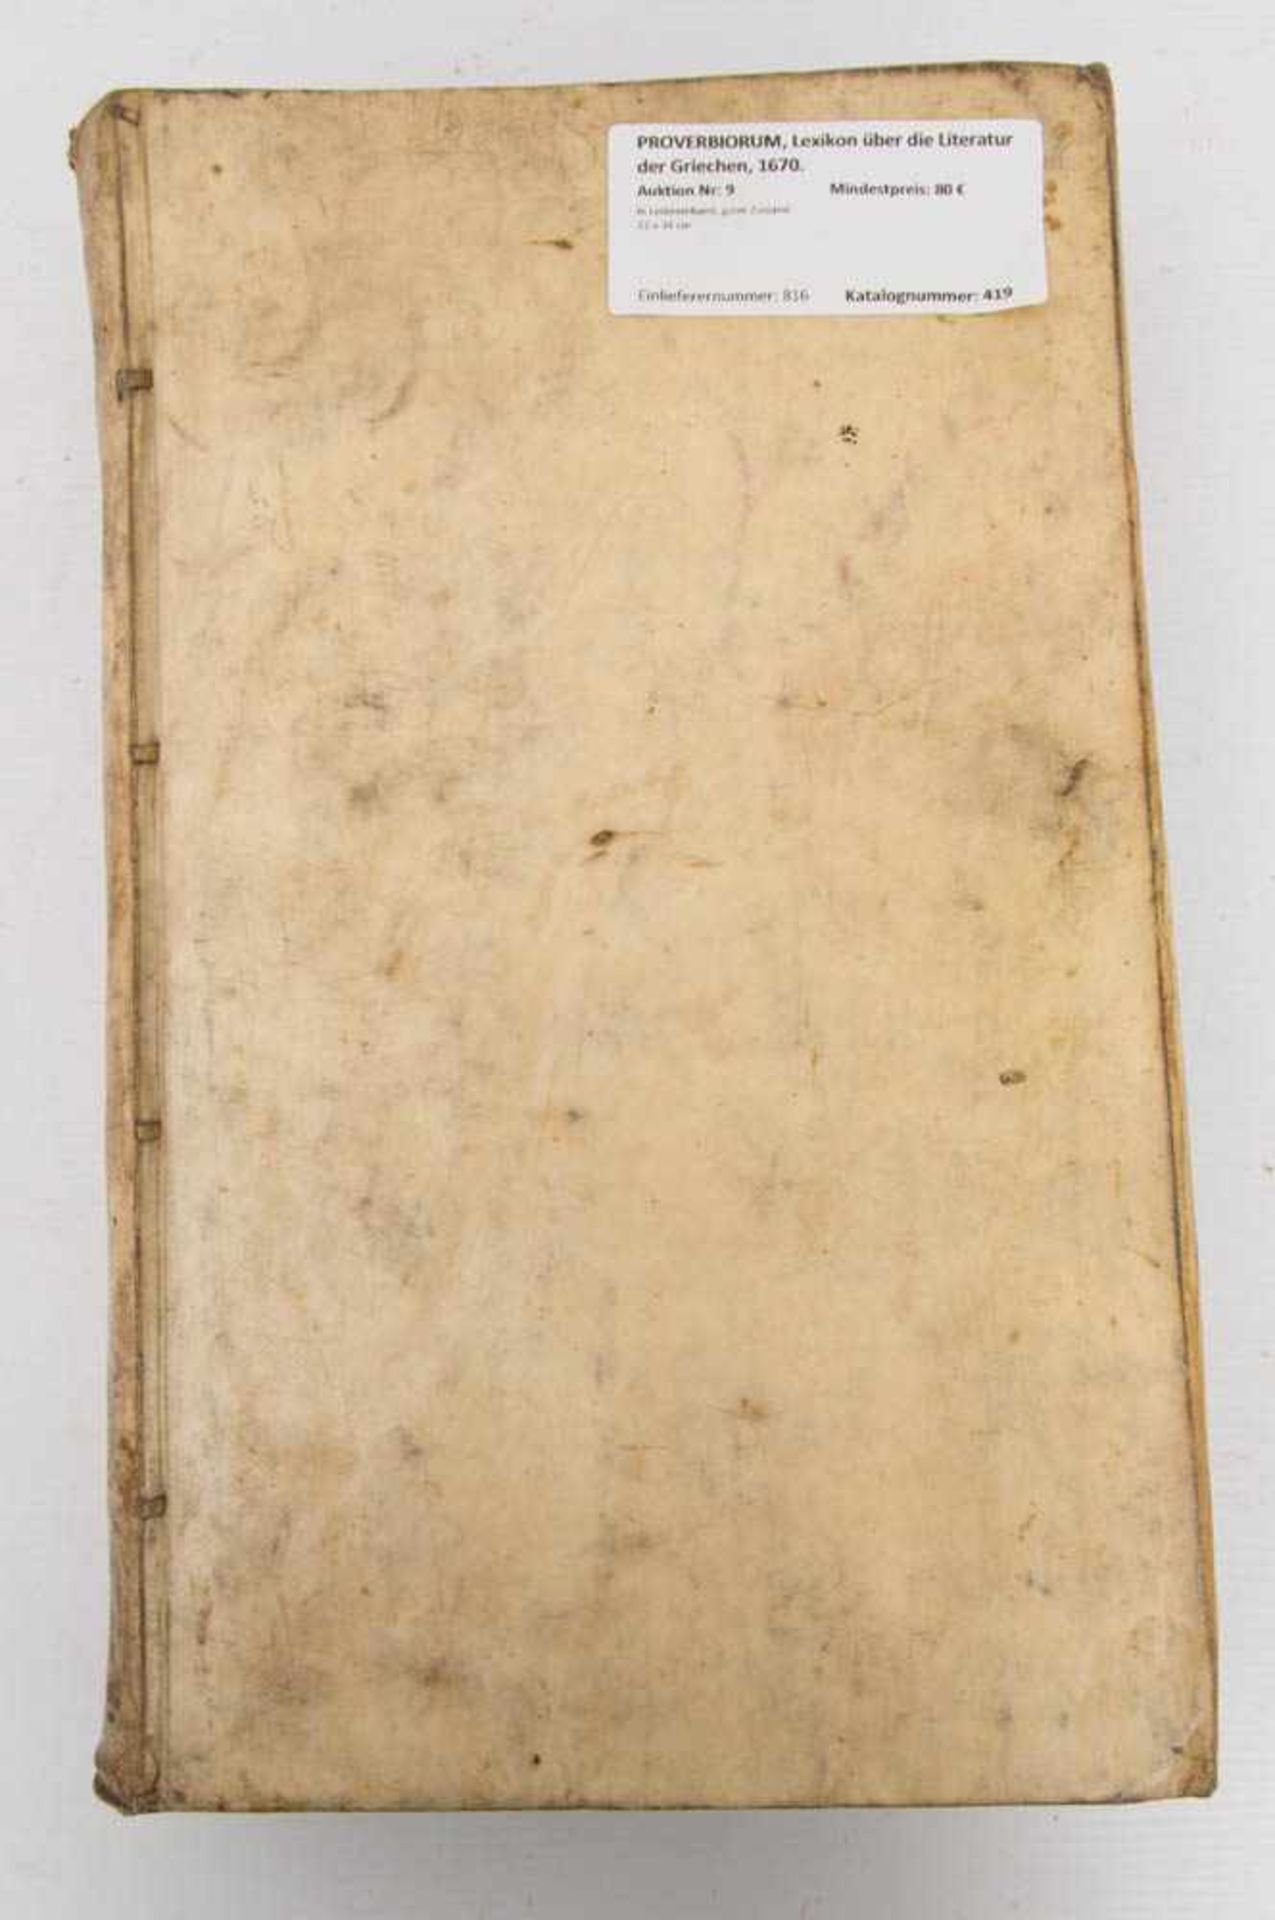 PROVERBIORUM, Lexikon über die Literatur der Griechen, 1670.In Ledereinband, guter Zustand. 22 x - Bild 3 aus 4